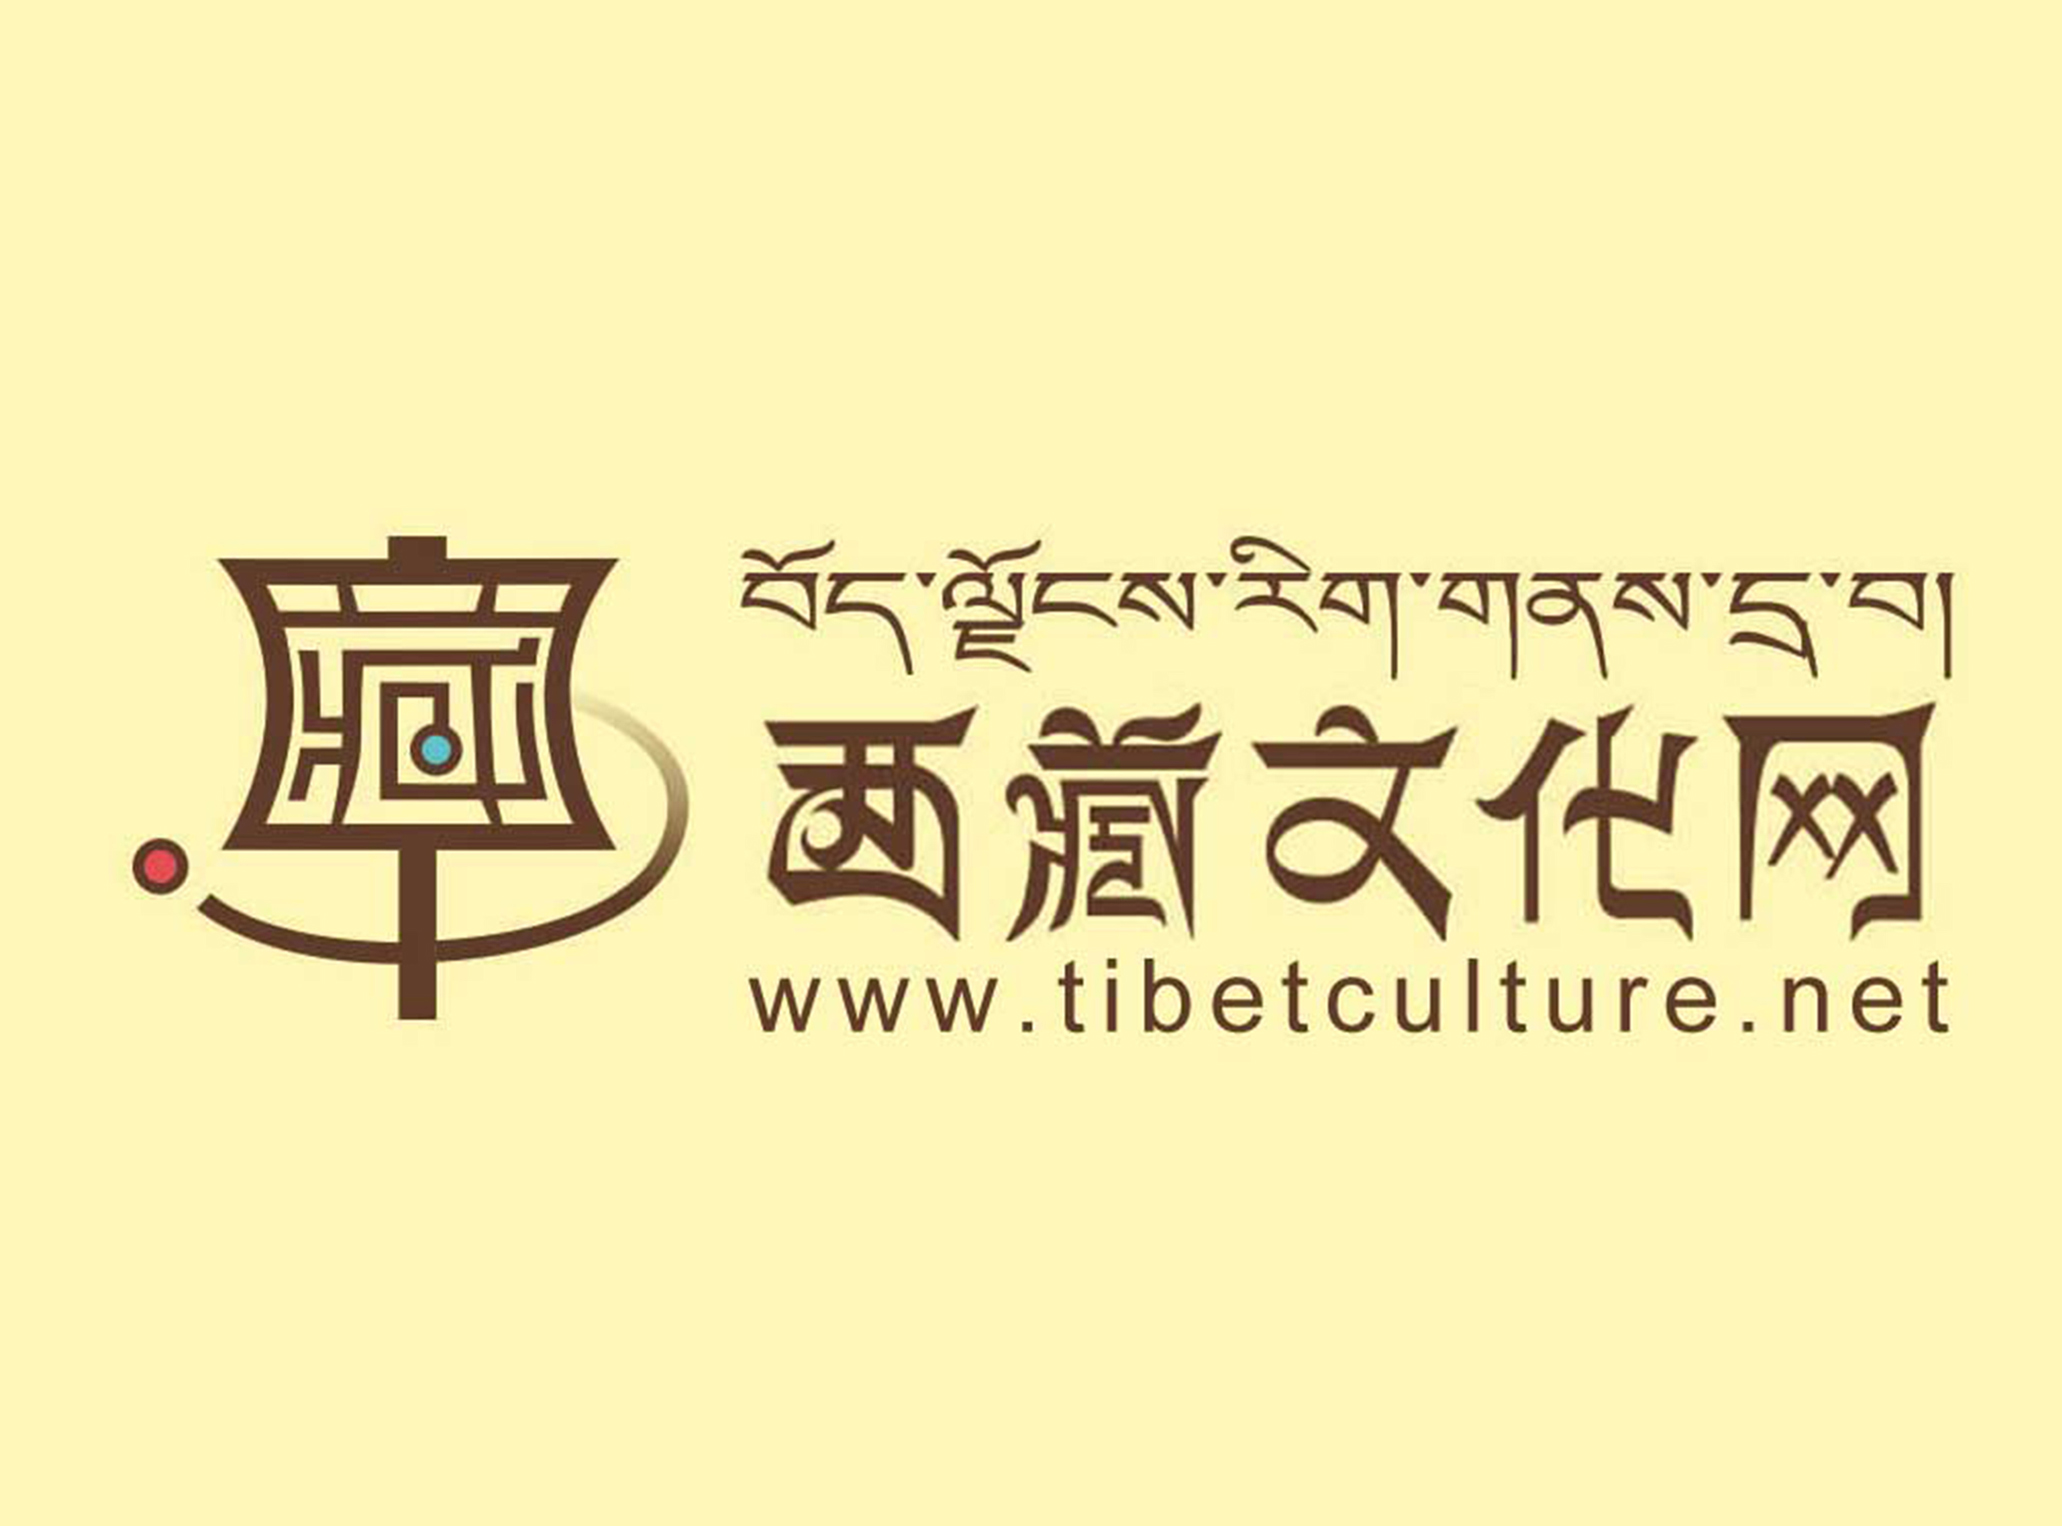 西藏文化网logo设计